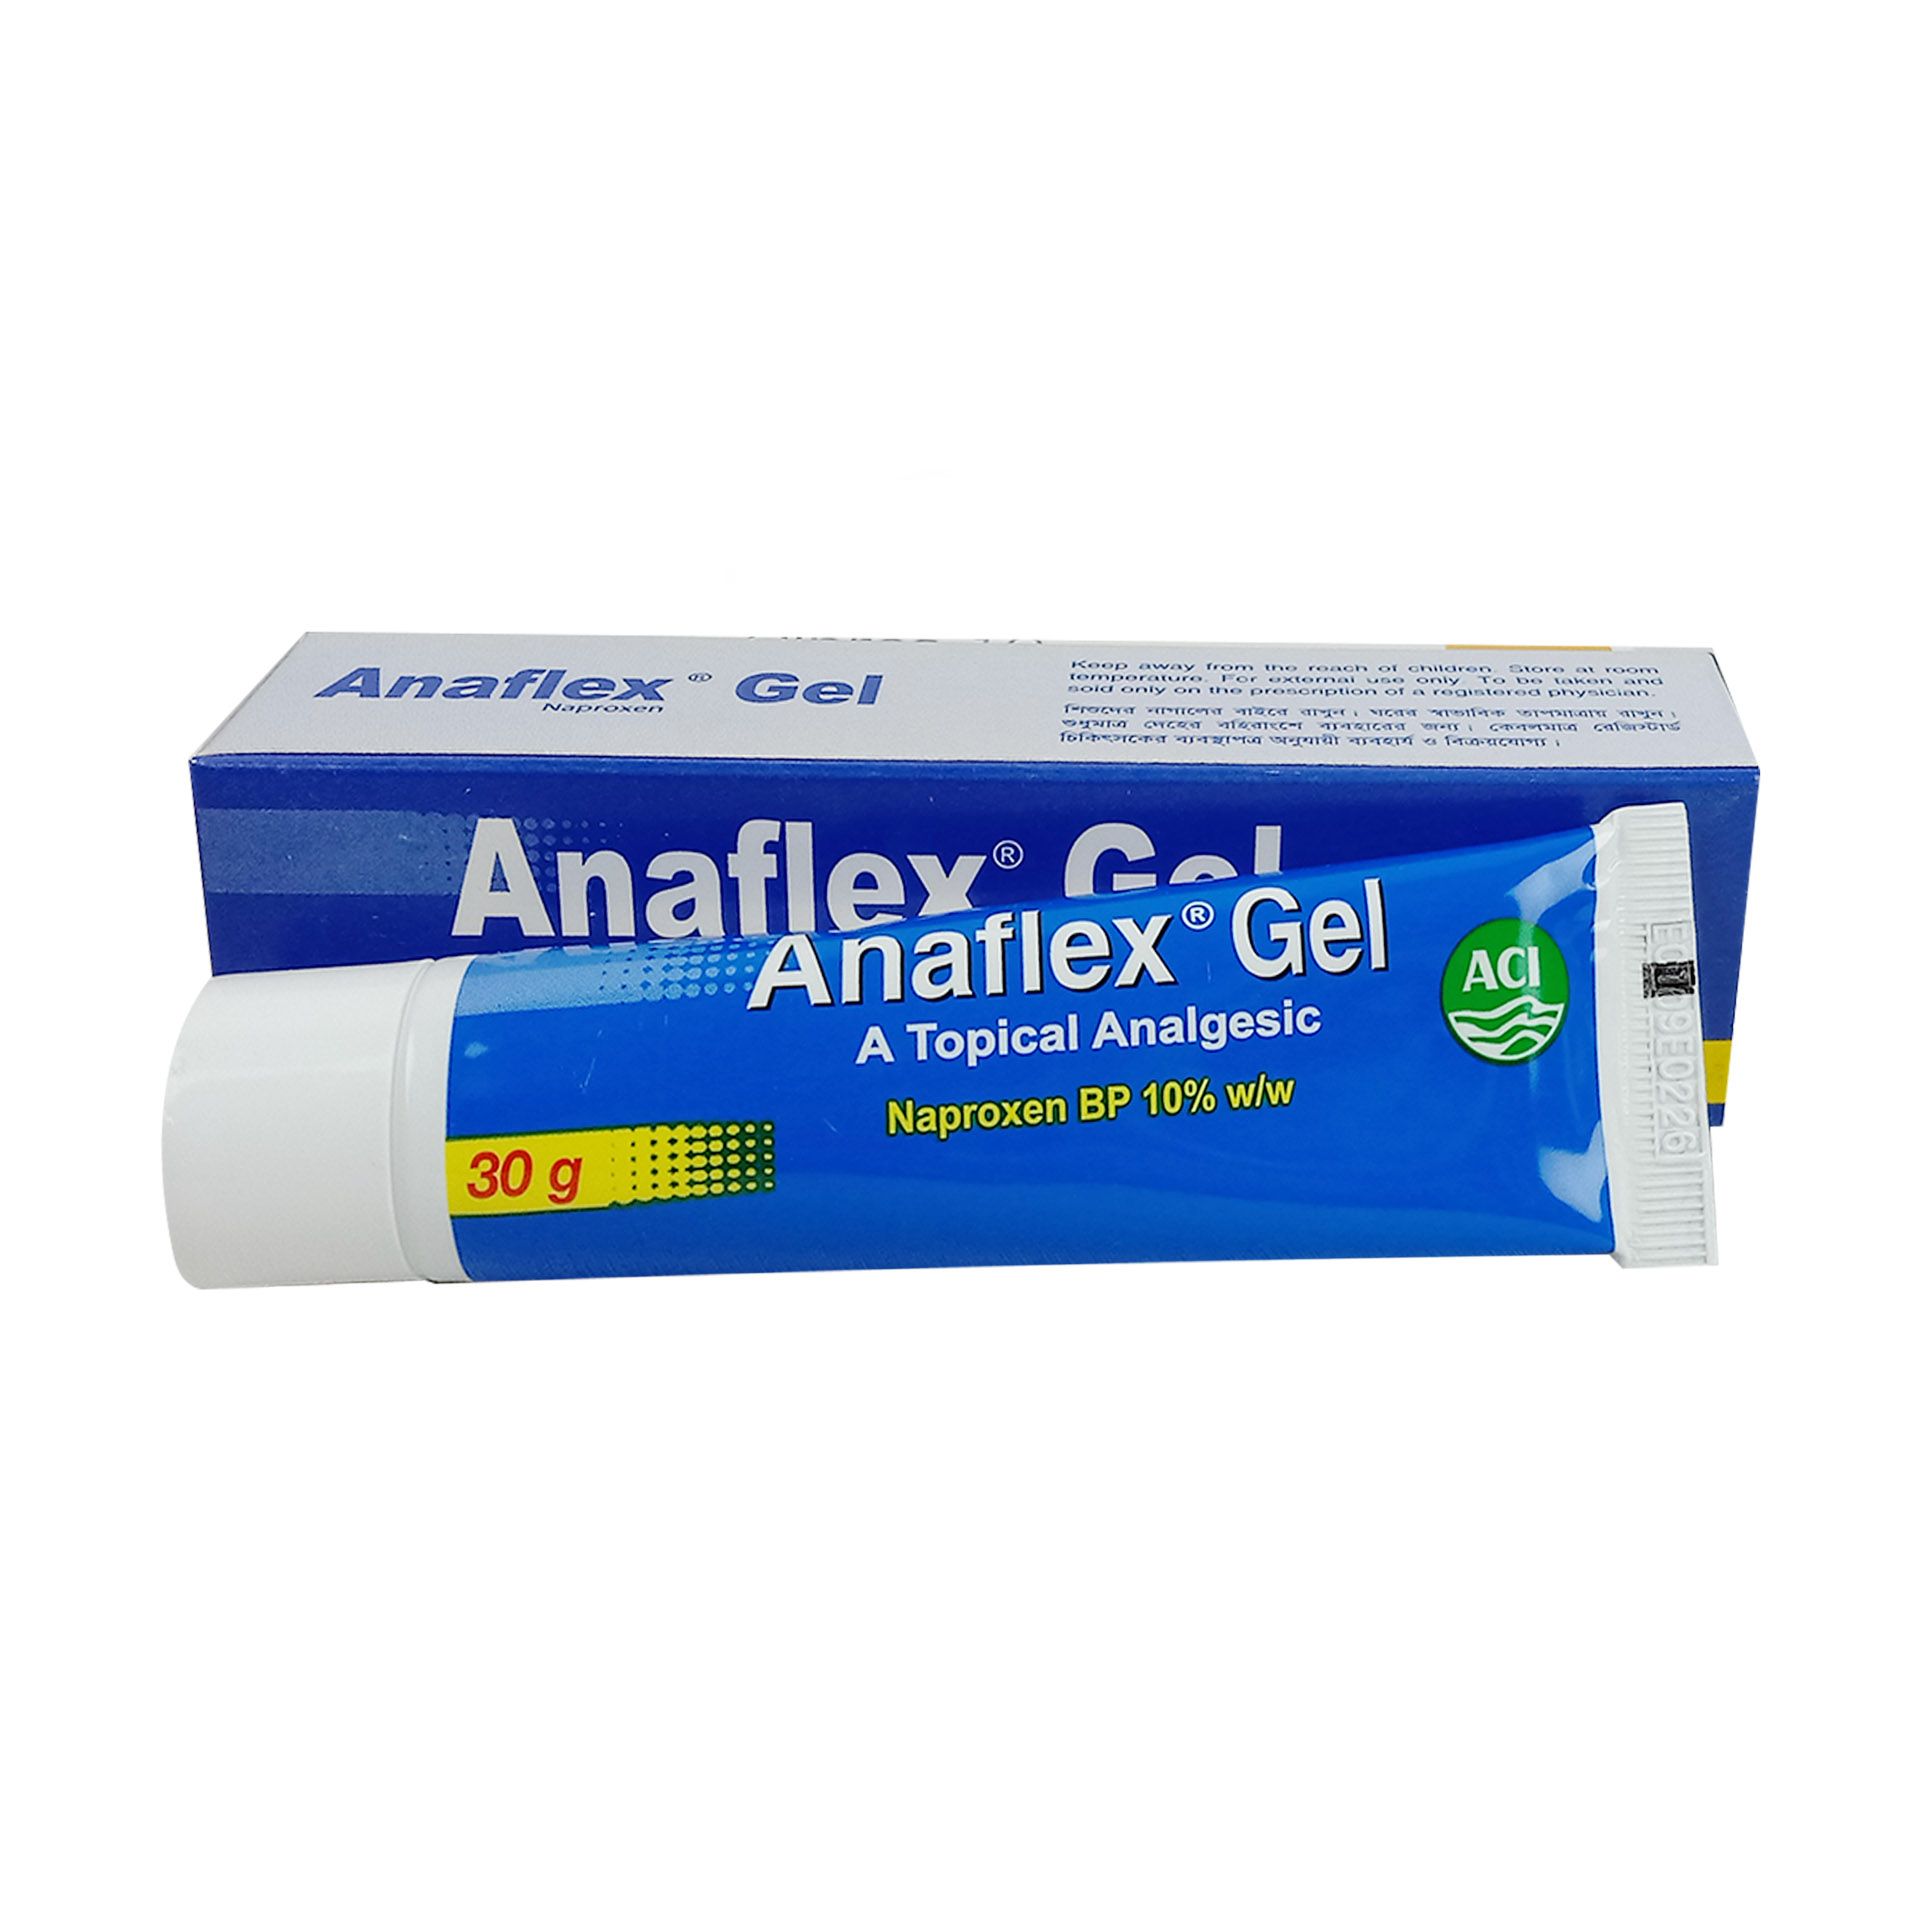 Anaflex 10% Gel